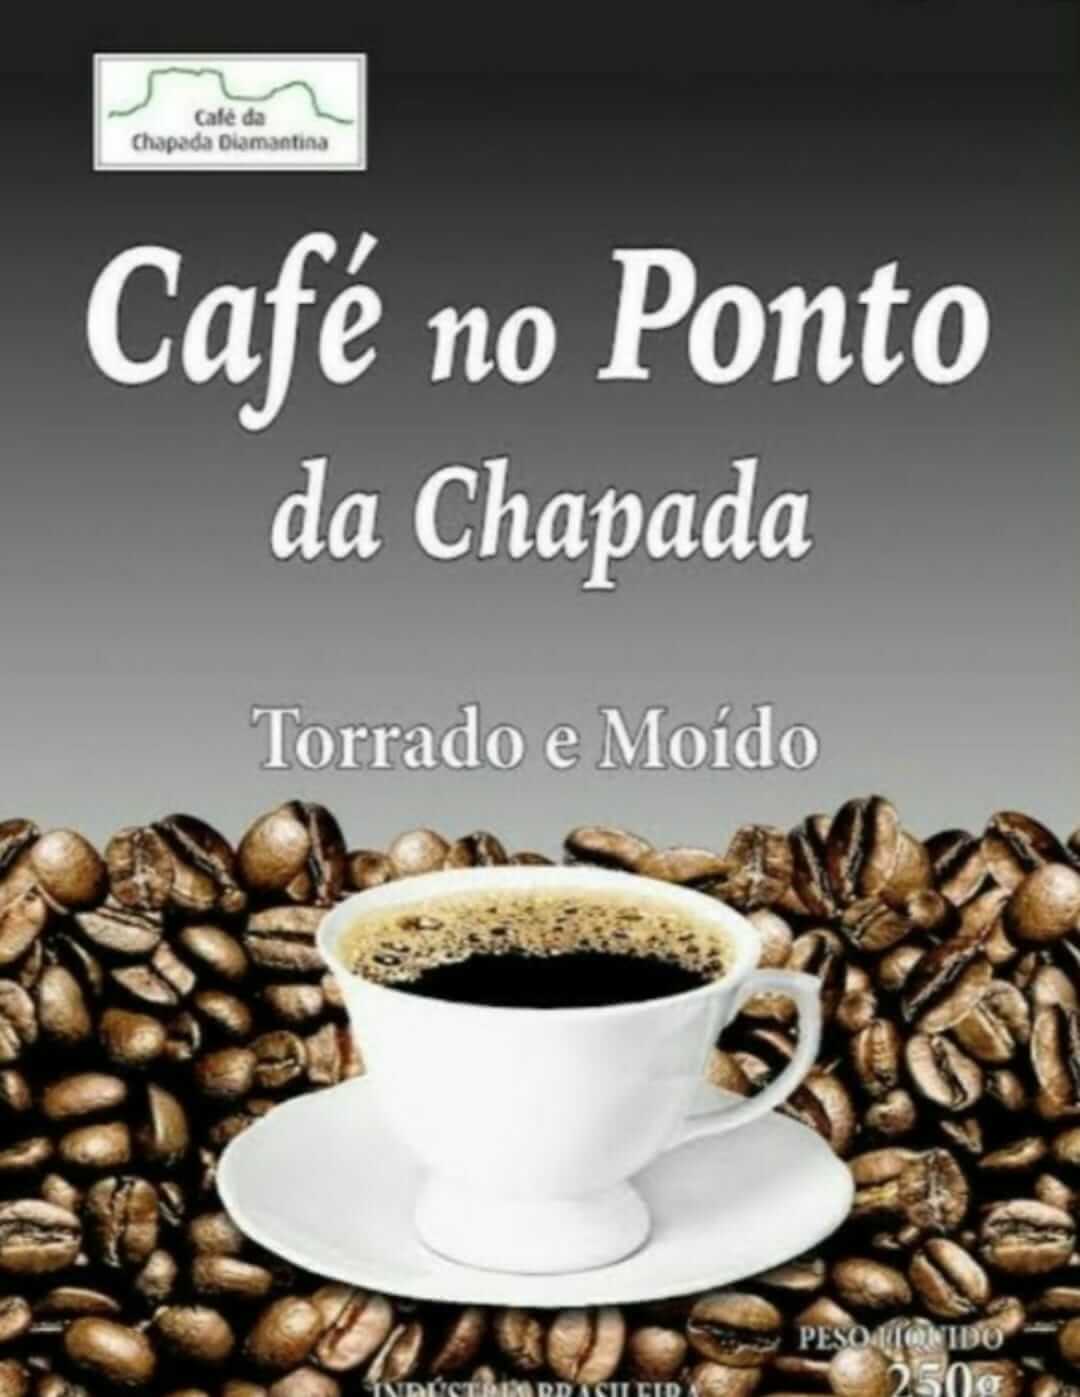 Café Ponto Br